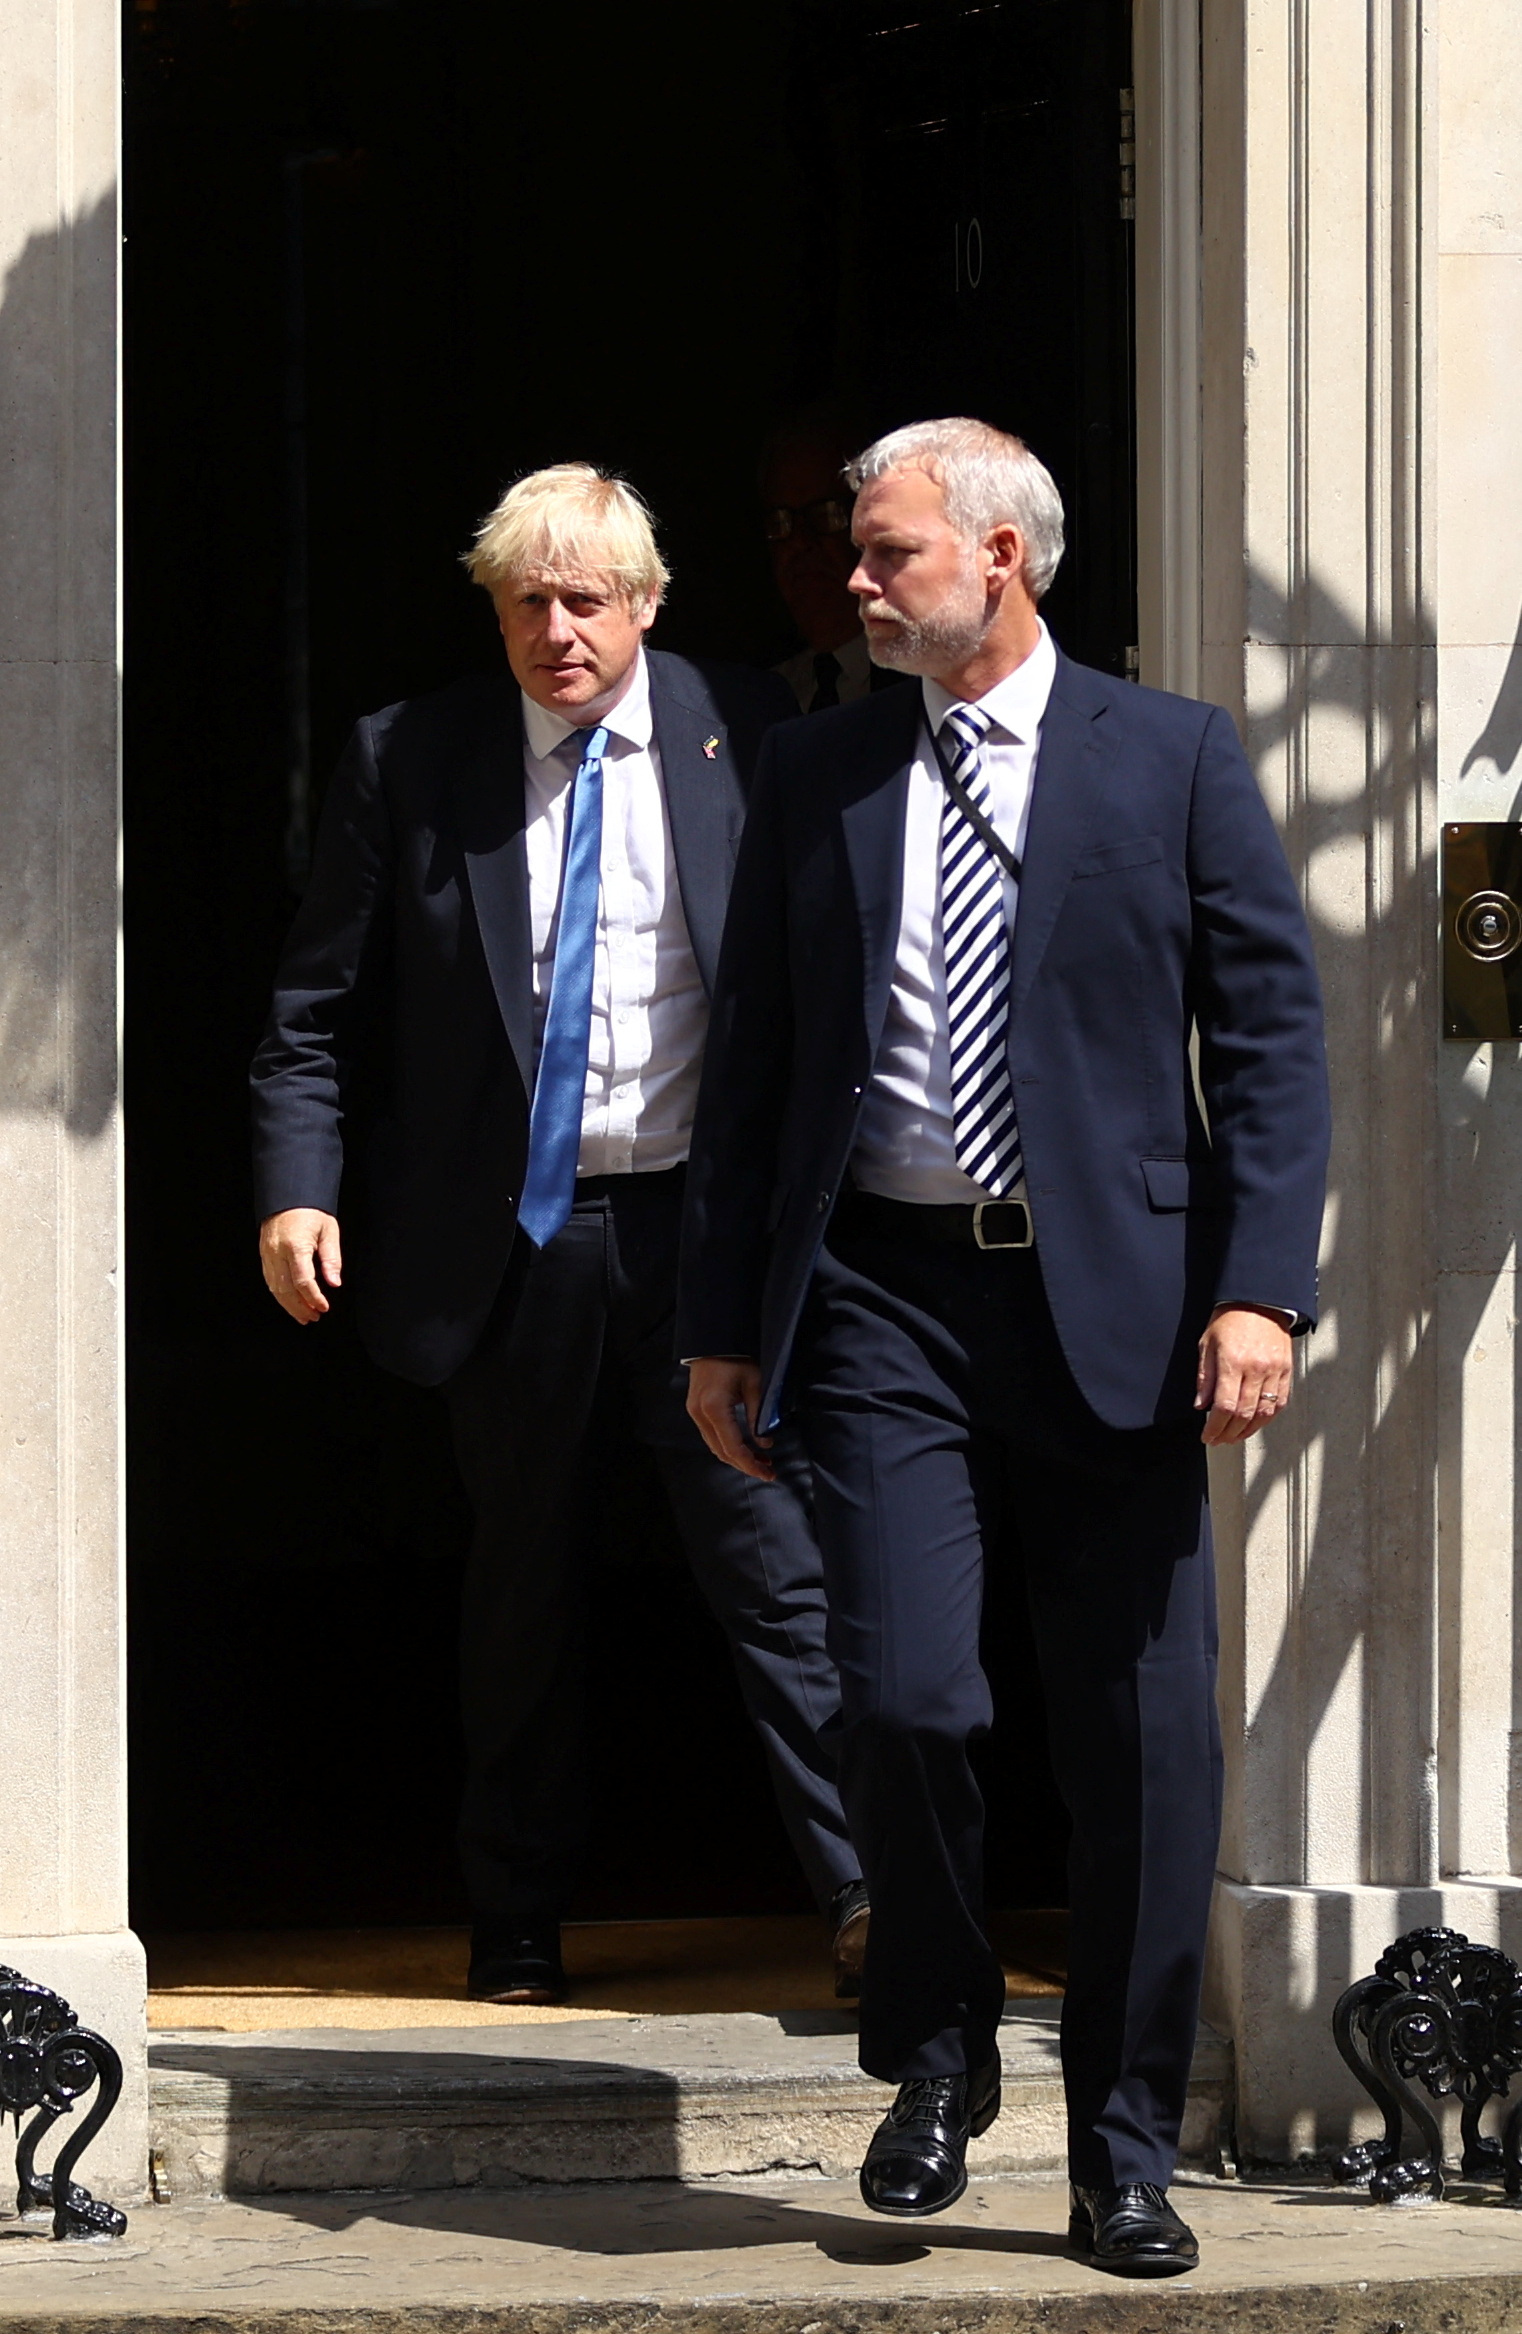 El primer ministro Boris Johnson se vio obligado a renunciar tras una ola de renuncias en su gabinete por los últimos escándalos que salpicaron al Gobierno (REUTERS/Hannah McKay)